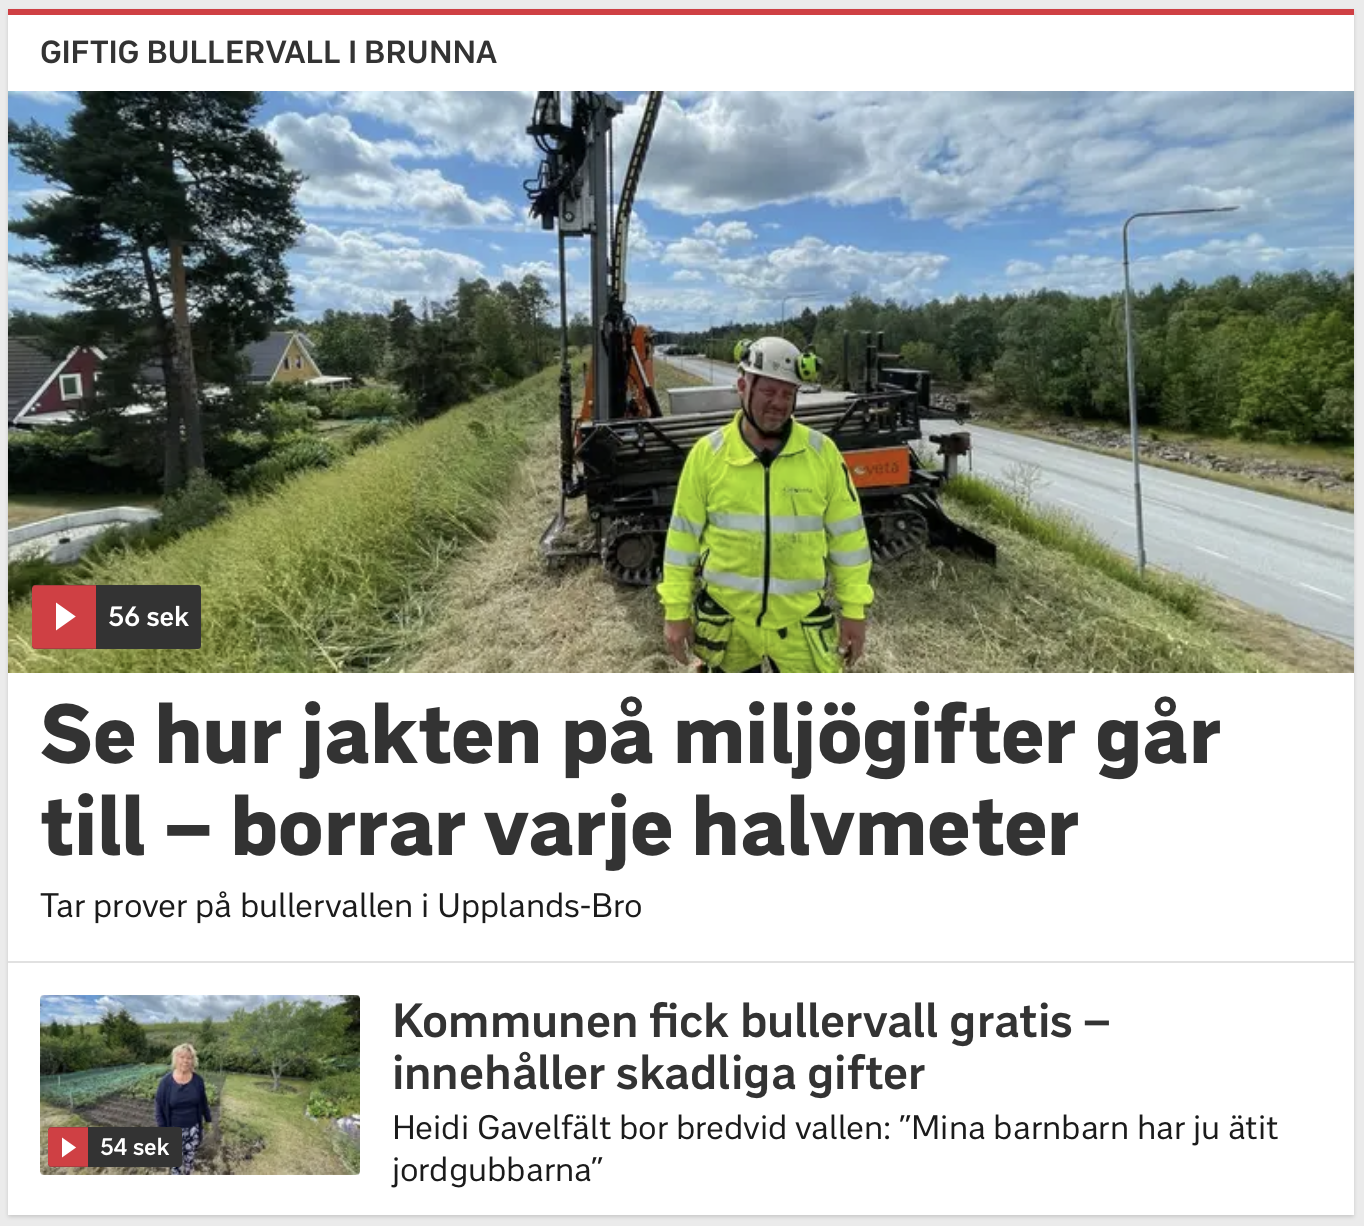 Bullervall i Upplands-Bro med fältgeotekniker Anders som letar miljögifter